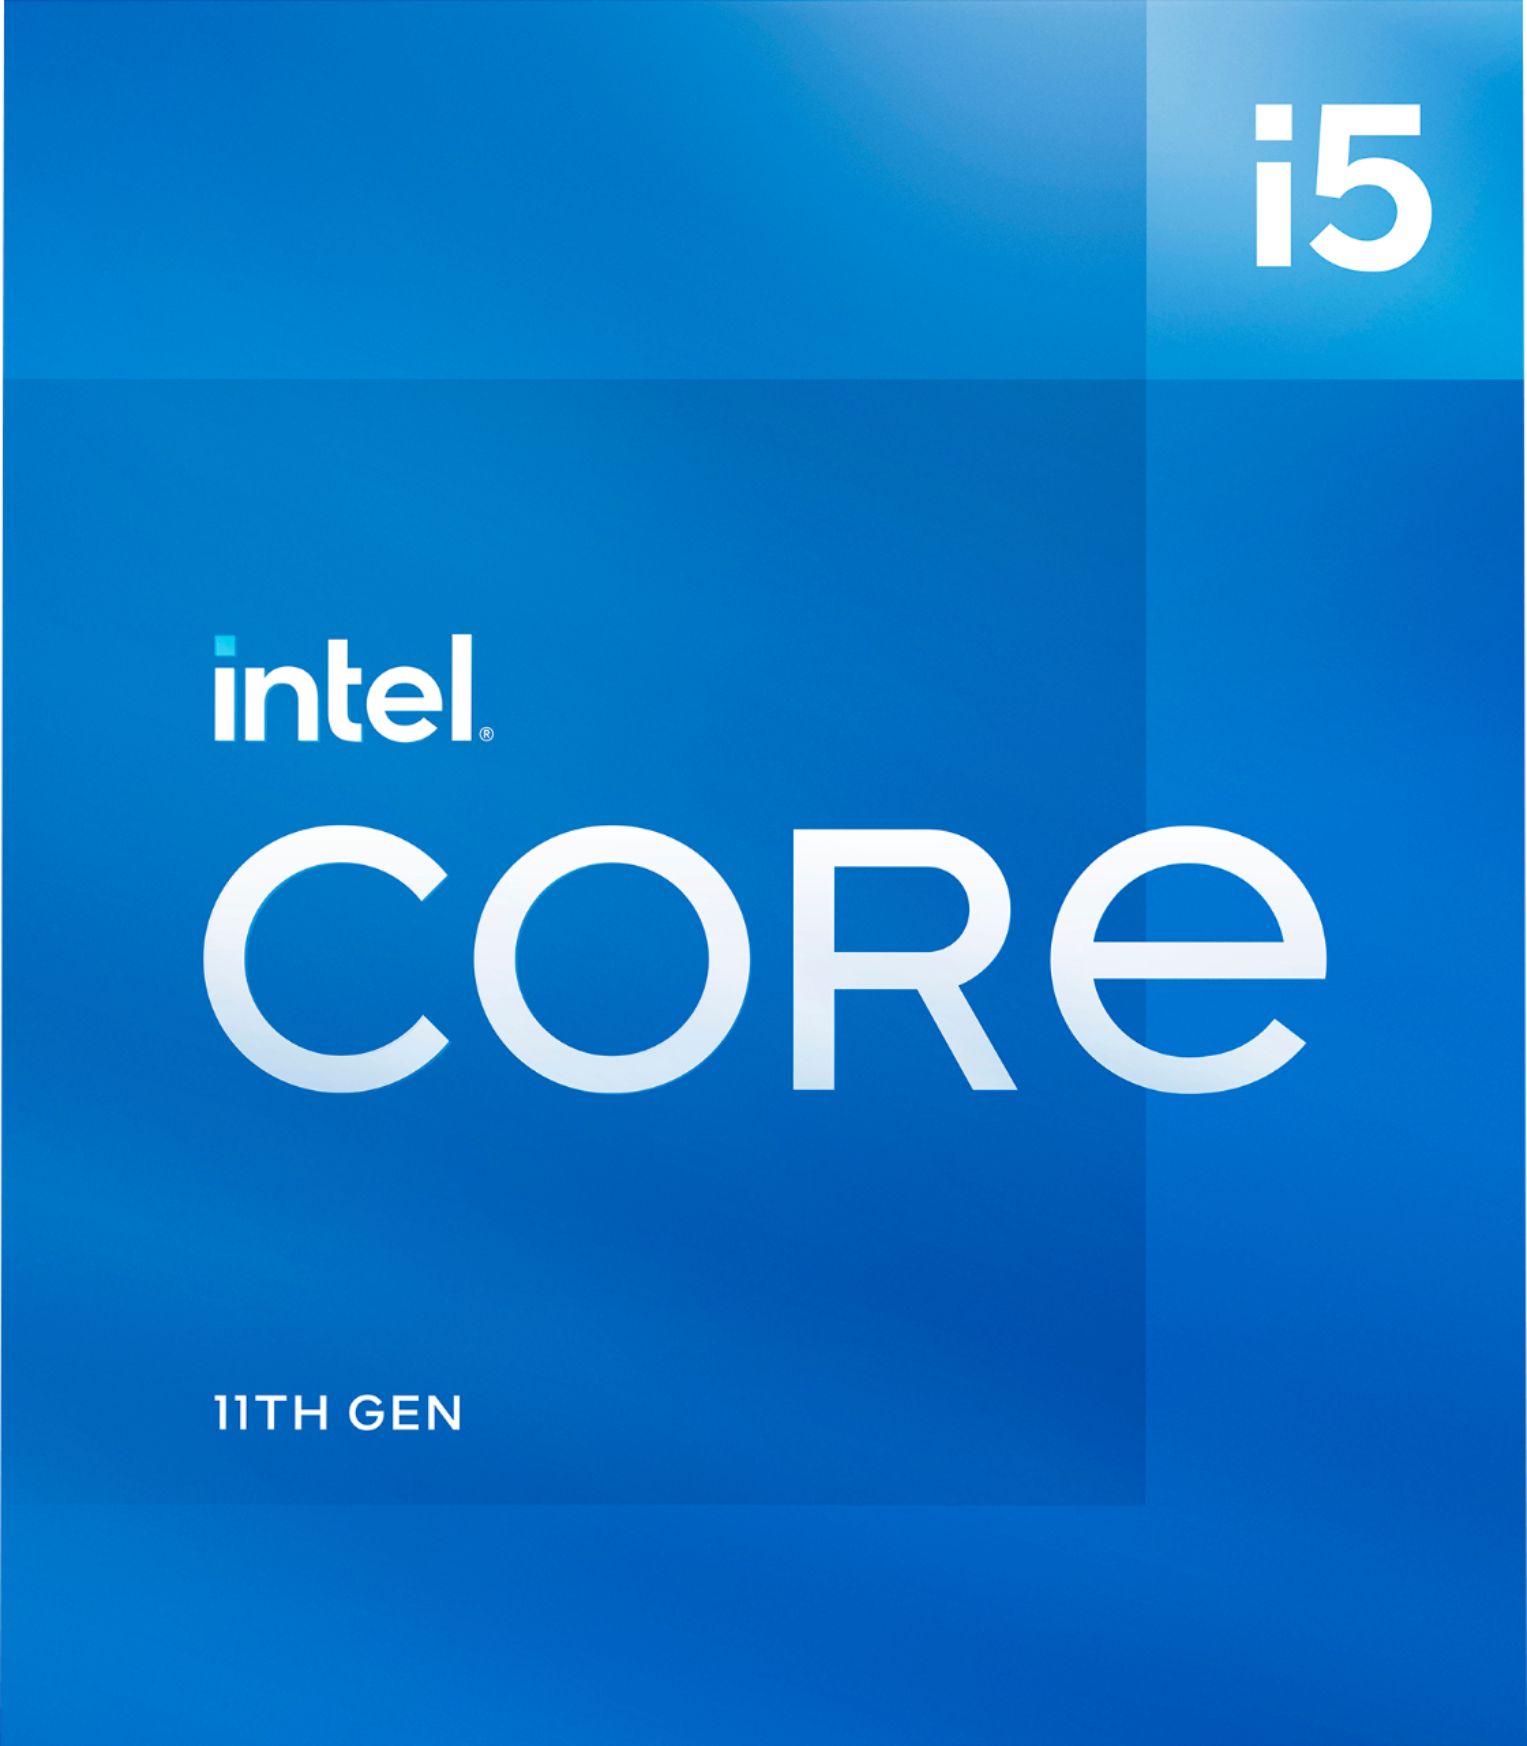 Wanneer vrouw Het kantoor Intel Core i5-11400 11th Generation 6 Core 12 Thread 2.6 to 4.4 GHz LGA1200  Locked Desktop Processor BX8070811400 - Best Buy